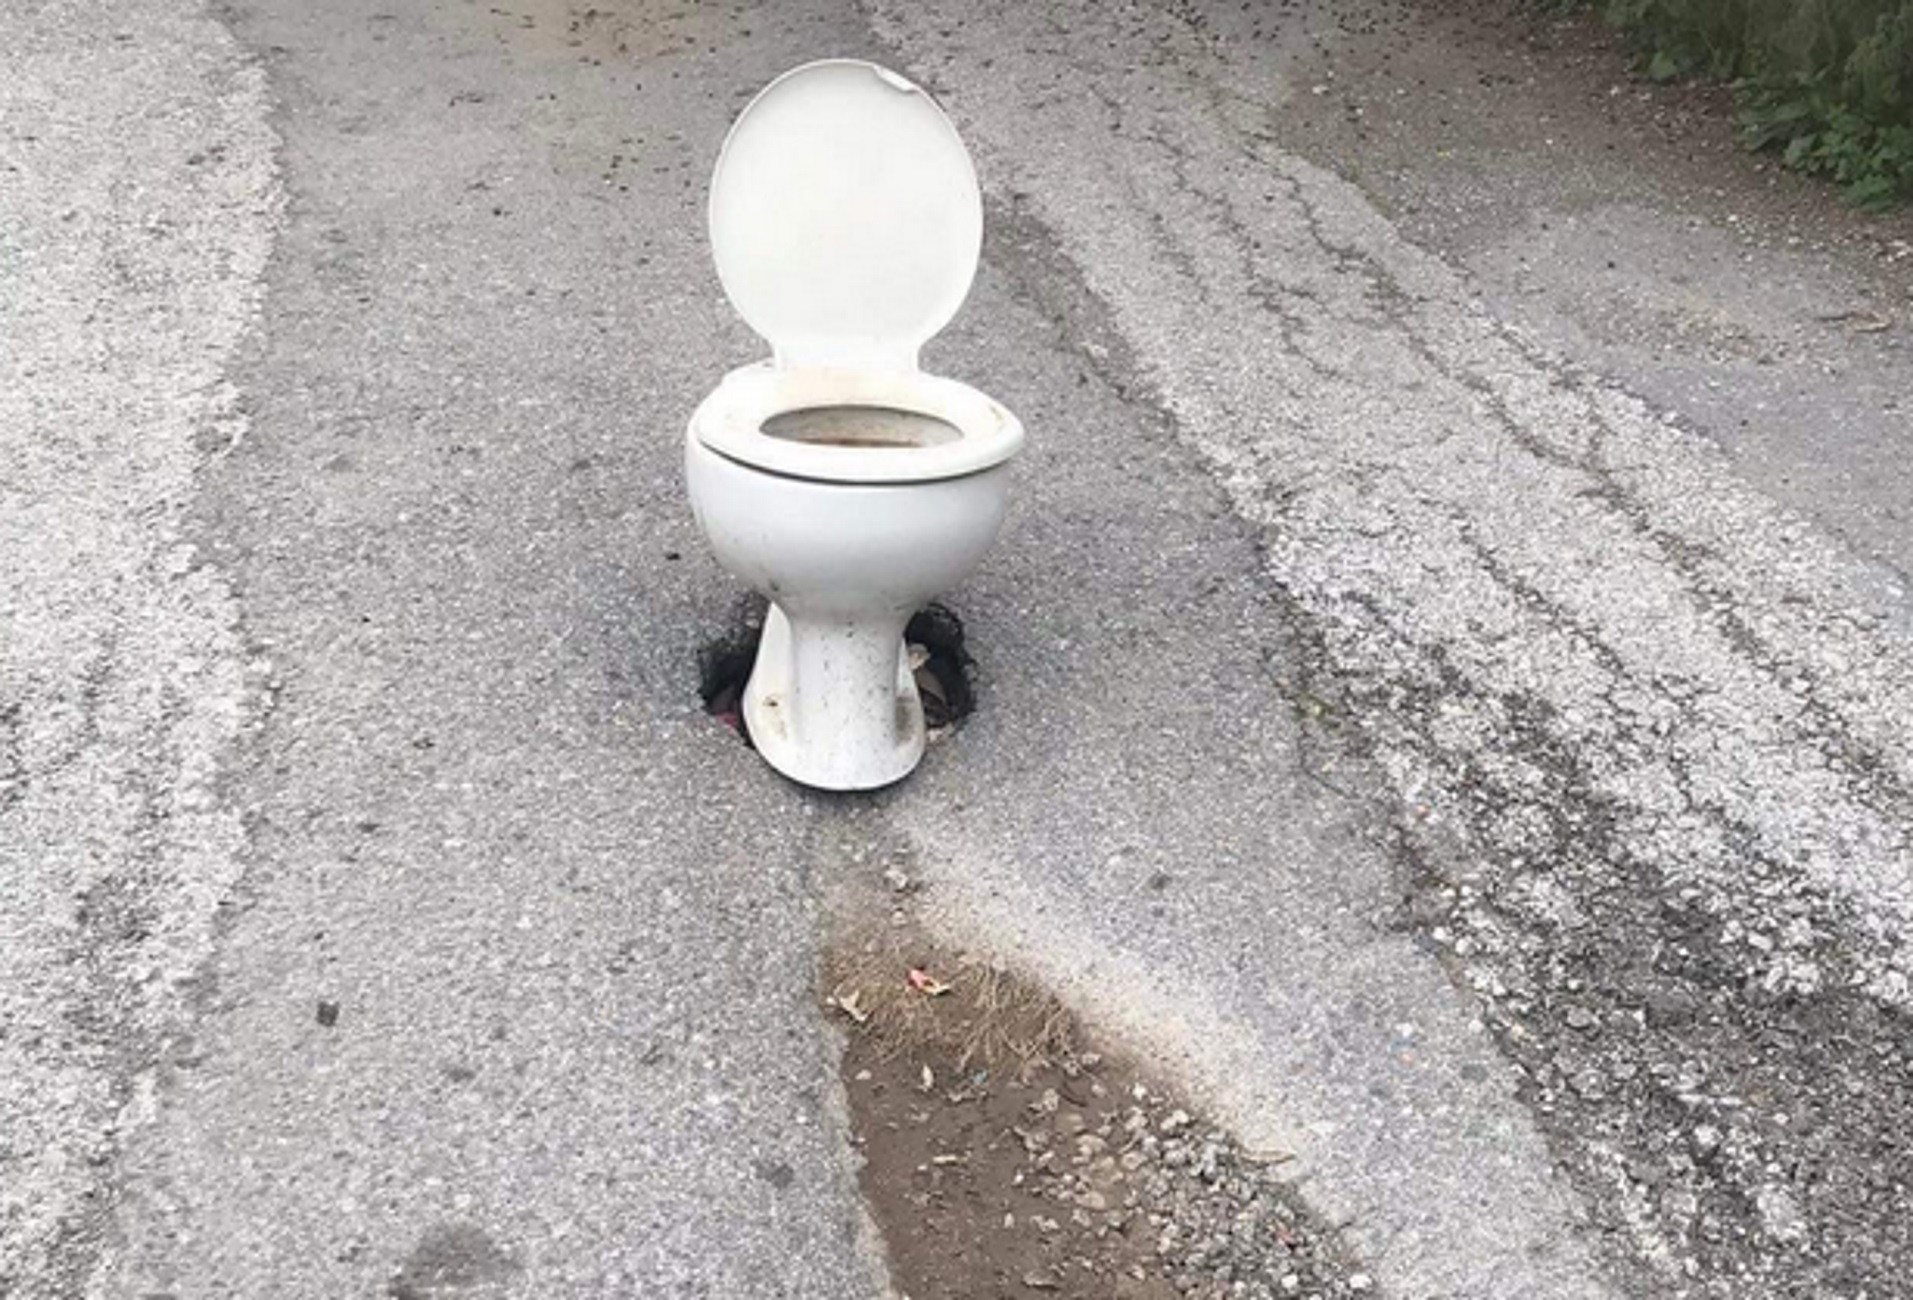 Λακωνία: Κάλυψαν λακούβα με μια λεκάνη τουαλέτας και το αποτέλεσμα σε πολύπαθο δρόμο γίνεται viral